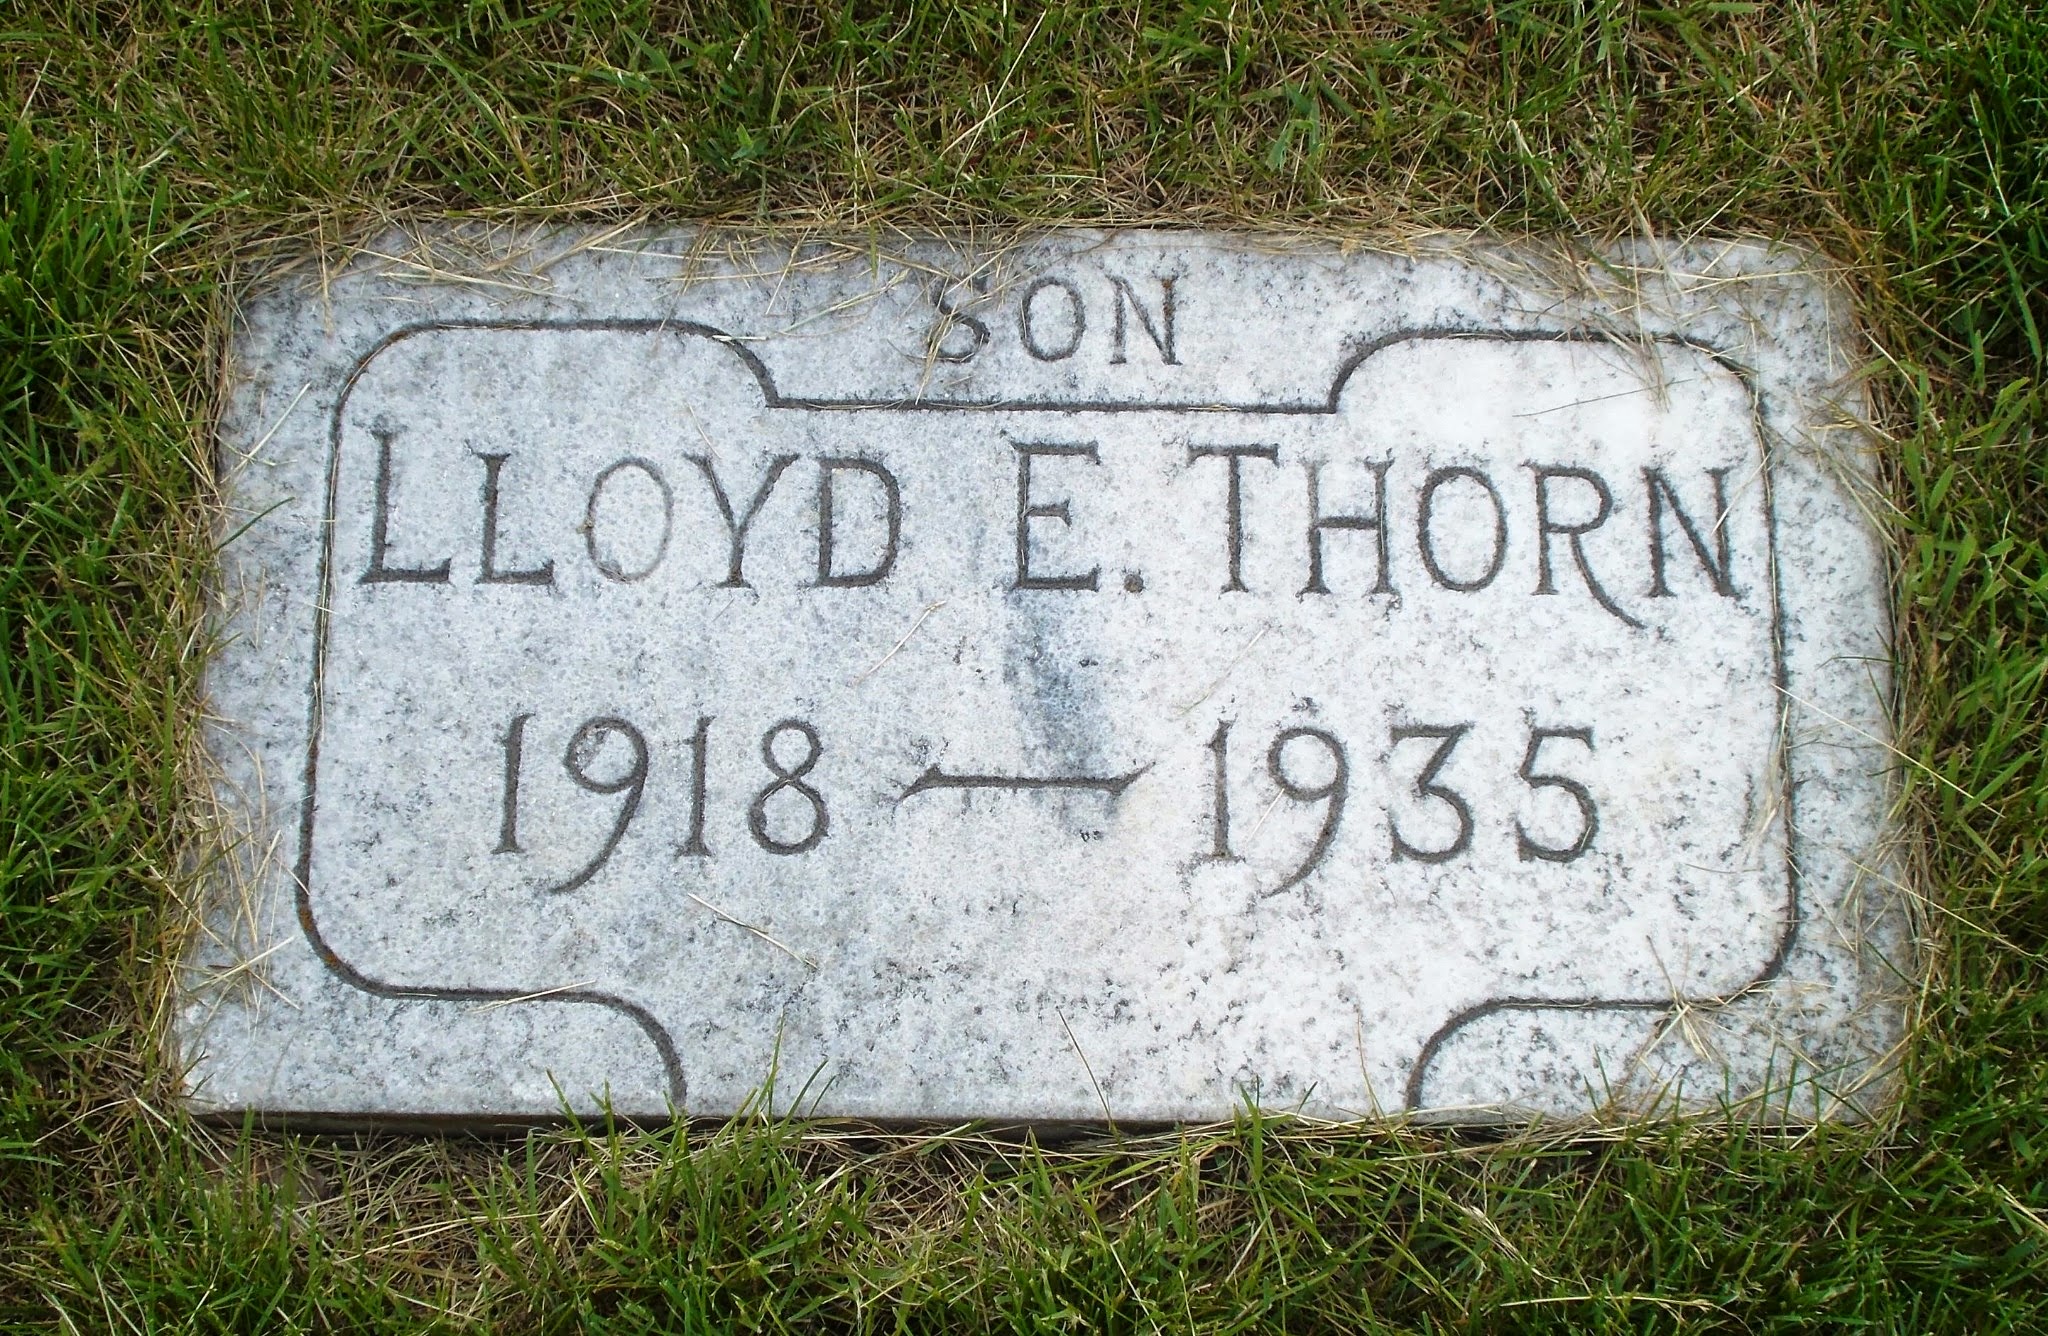 Lloyd E Thorn